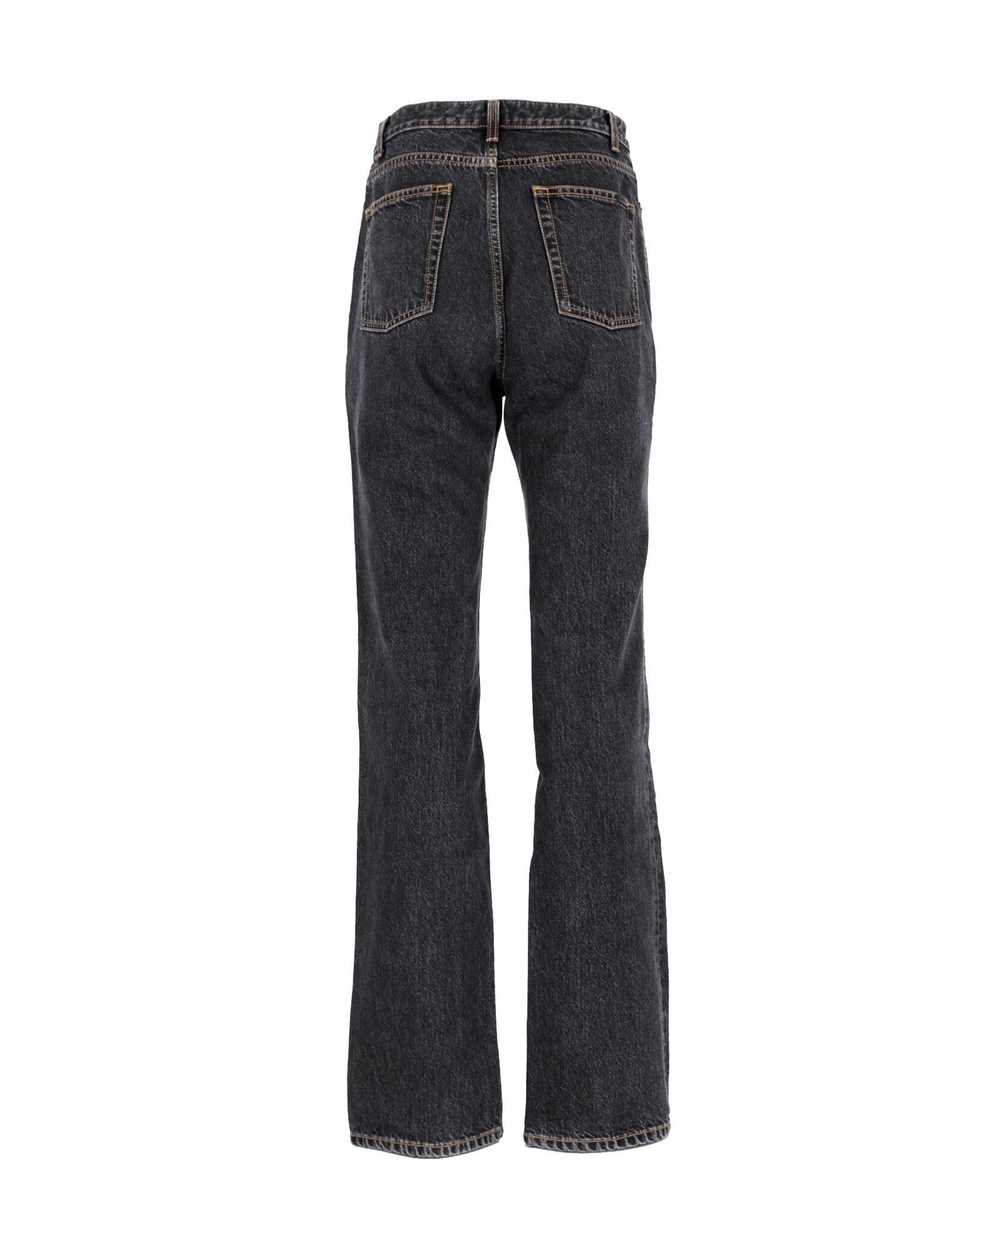 Yves Saint Laurent High Waist Black Cotton Jeans … - image 3